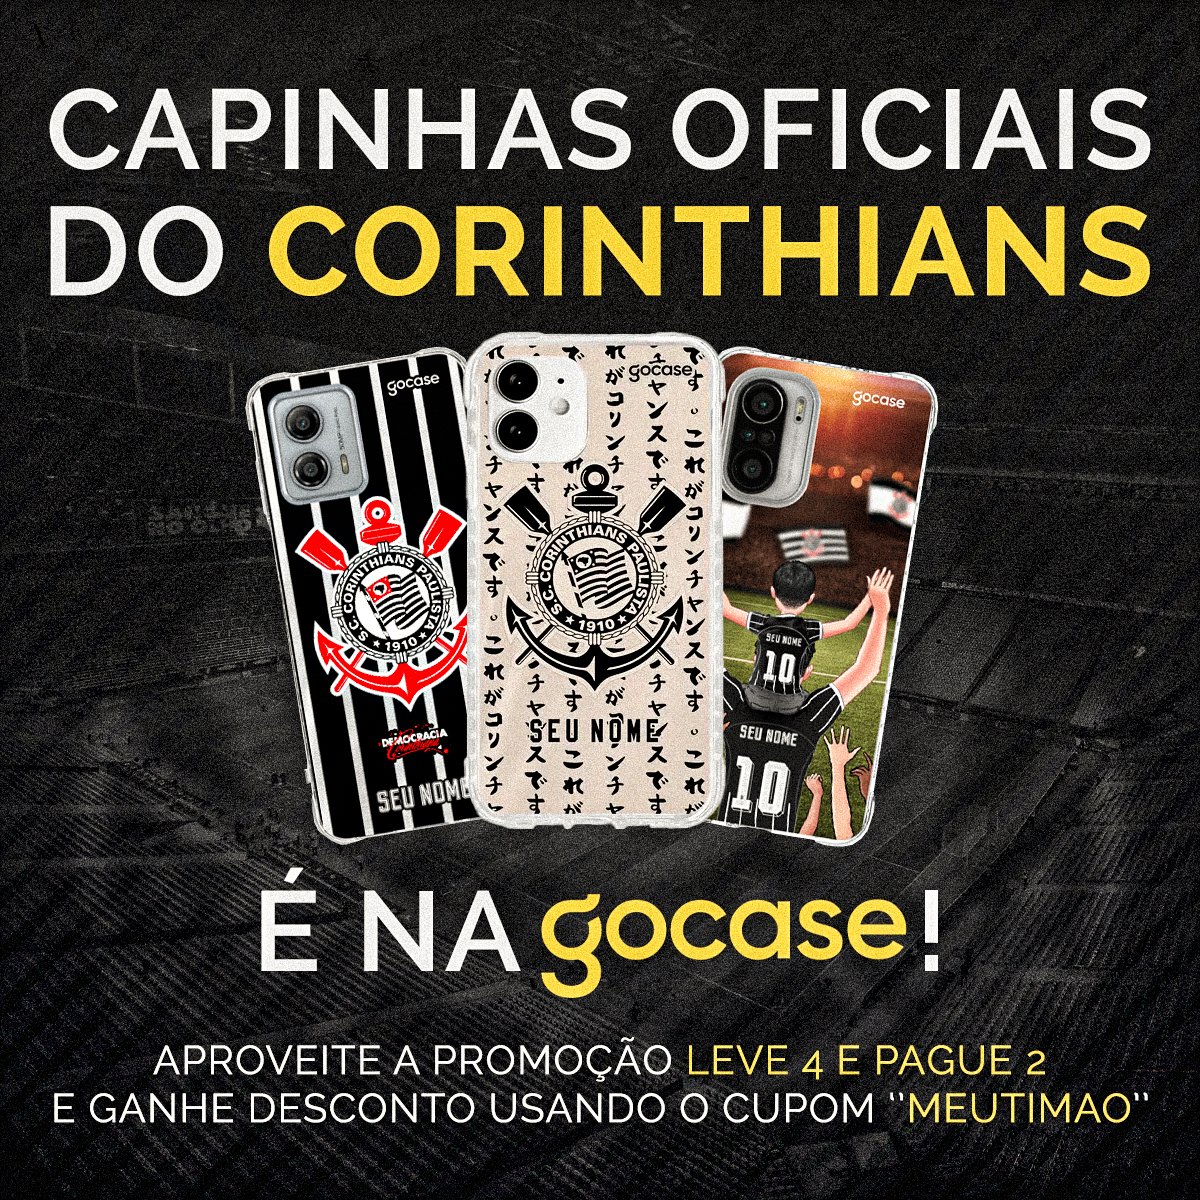 Quer deixar seu celular mais corinthiano?

Aproveite a promoção LEVE 4 e PAGUE 2 e use o cupom ''MEUTIMAO'' para ganhar desconto em compras de produtos do Corinthians na @gocasebr!

VEM!!! 👇
timao.me/Gocase